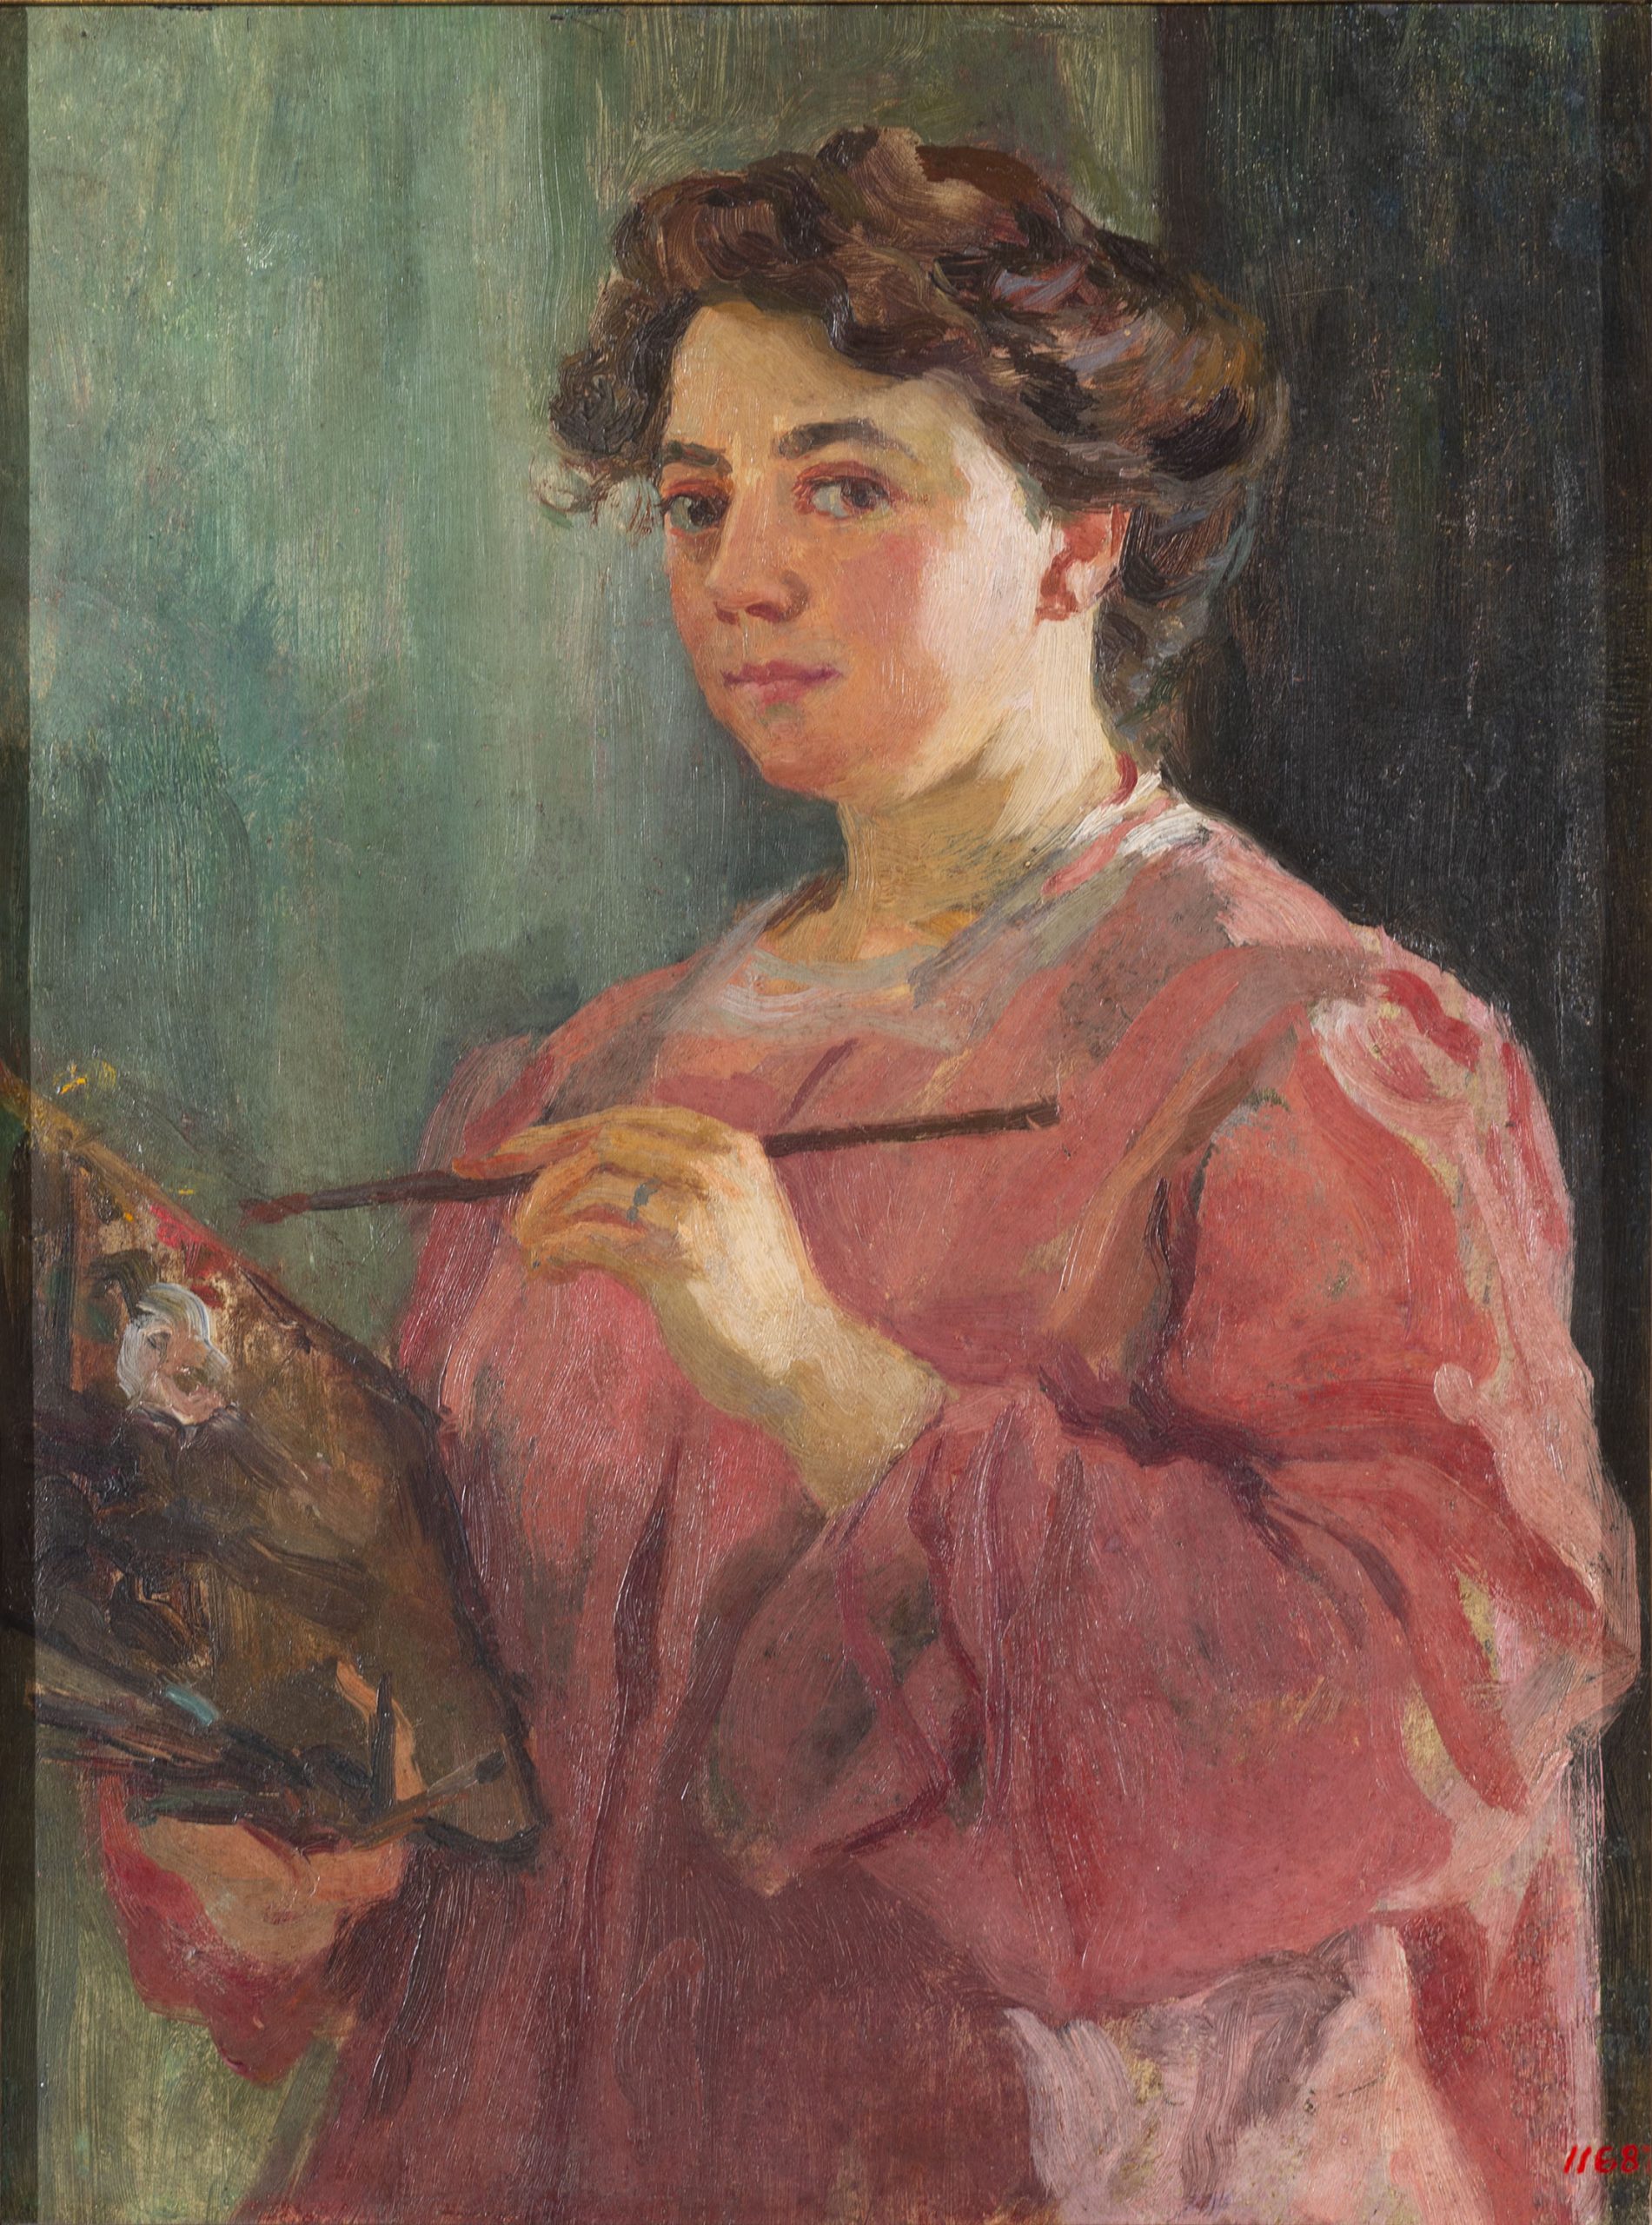 Lluïsa Vidal, Autoretrat, cap a 1899. Museu Nacional d’Art de Catalunya, donació de Francesca Vidal i altres germans de l'artista, 1935.